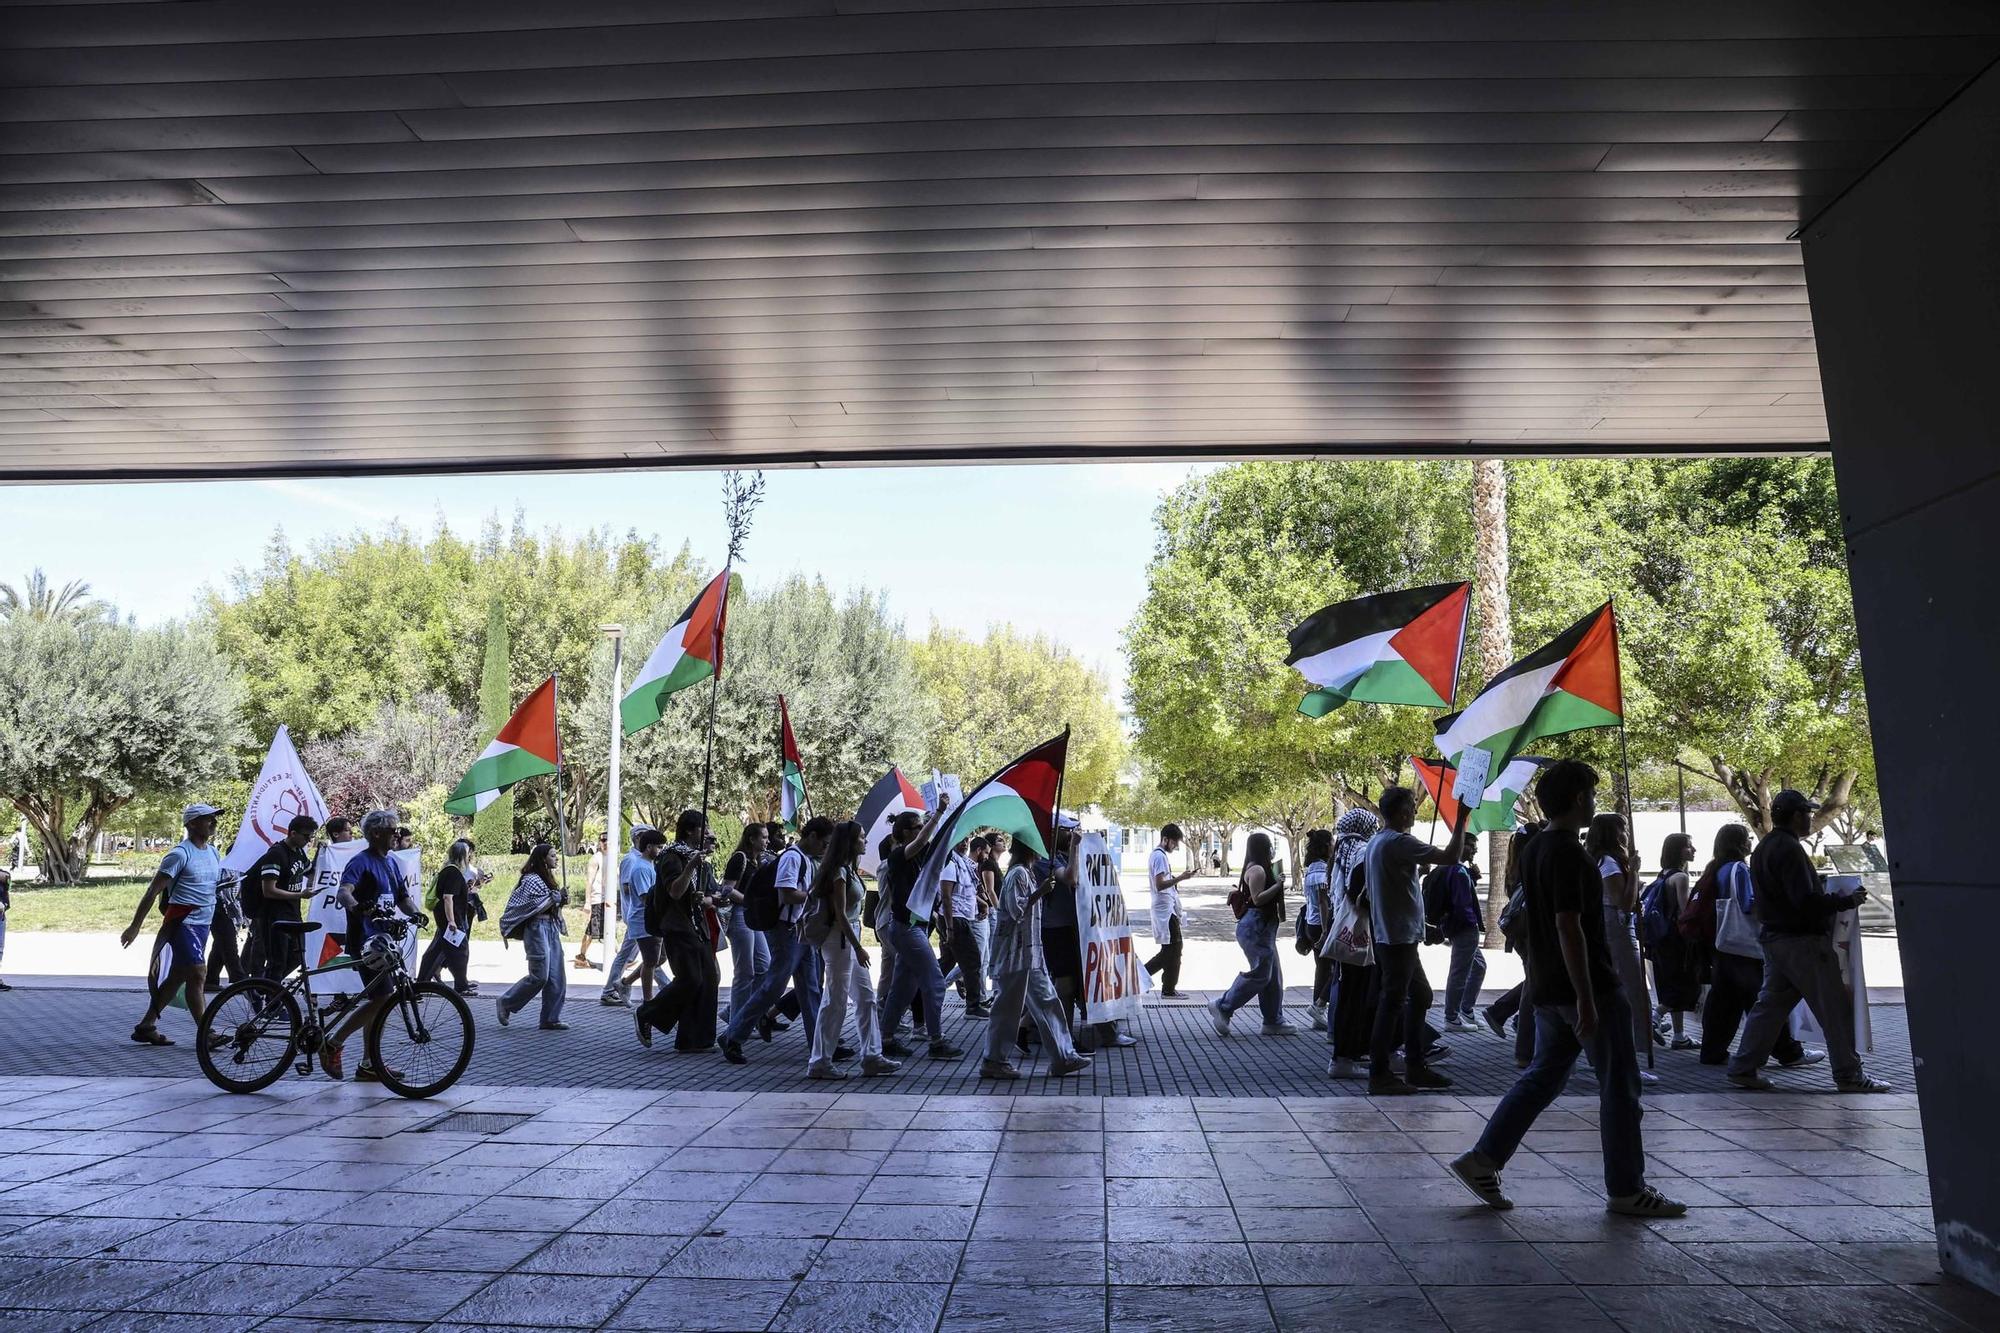 La acampada pro Palestina en la UA coge fuerza